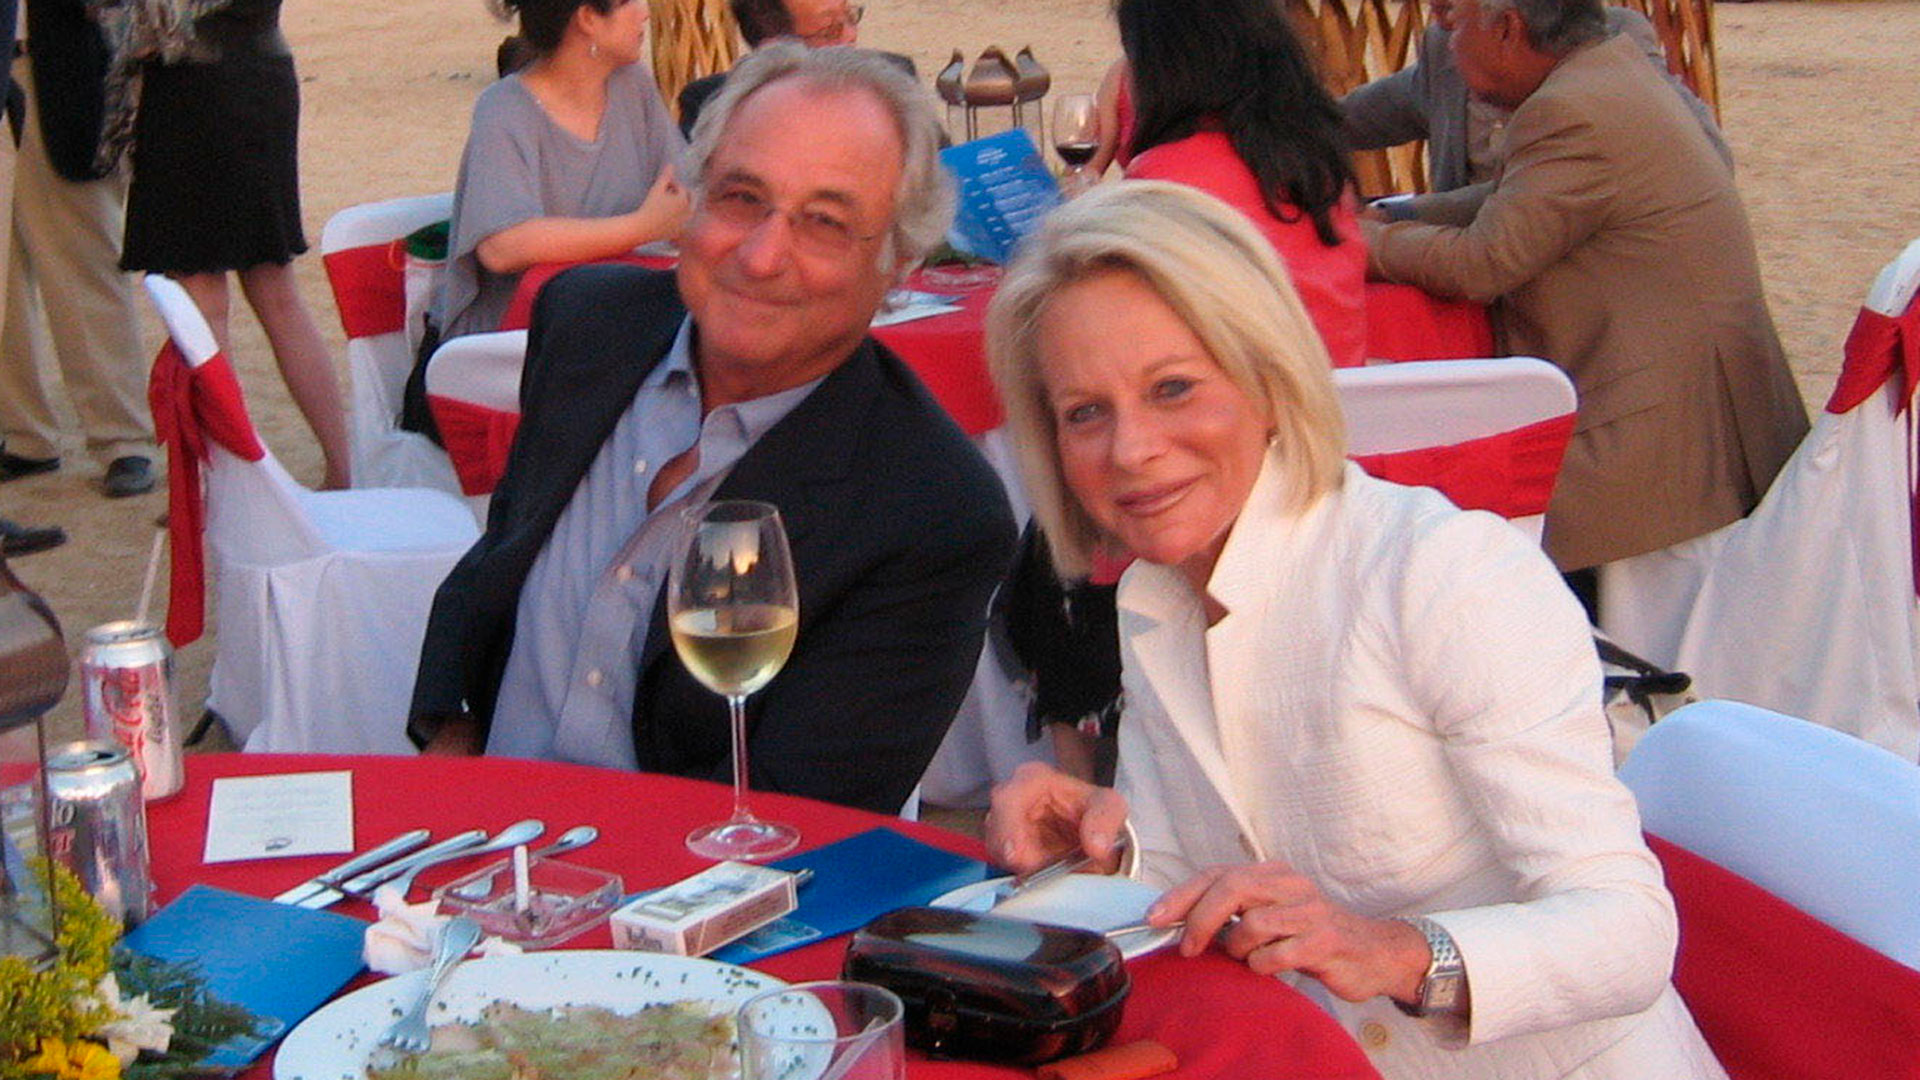 Los buenos tiempos de fortuna y vida social: Bernie Madoff y su esposa Ruth en una fiesta en Cabo San Lucas (Shutterstock)
